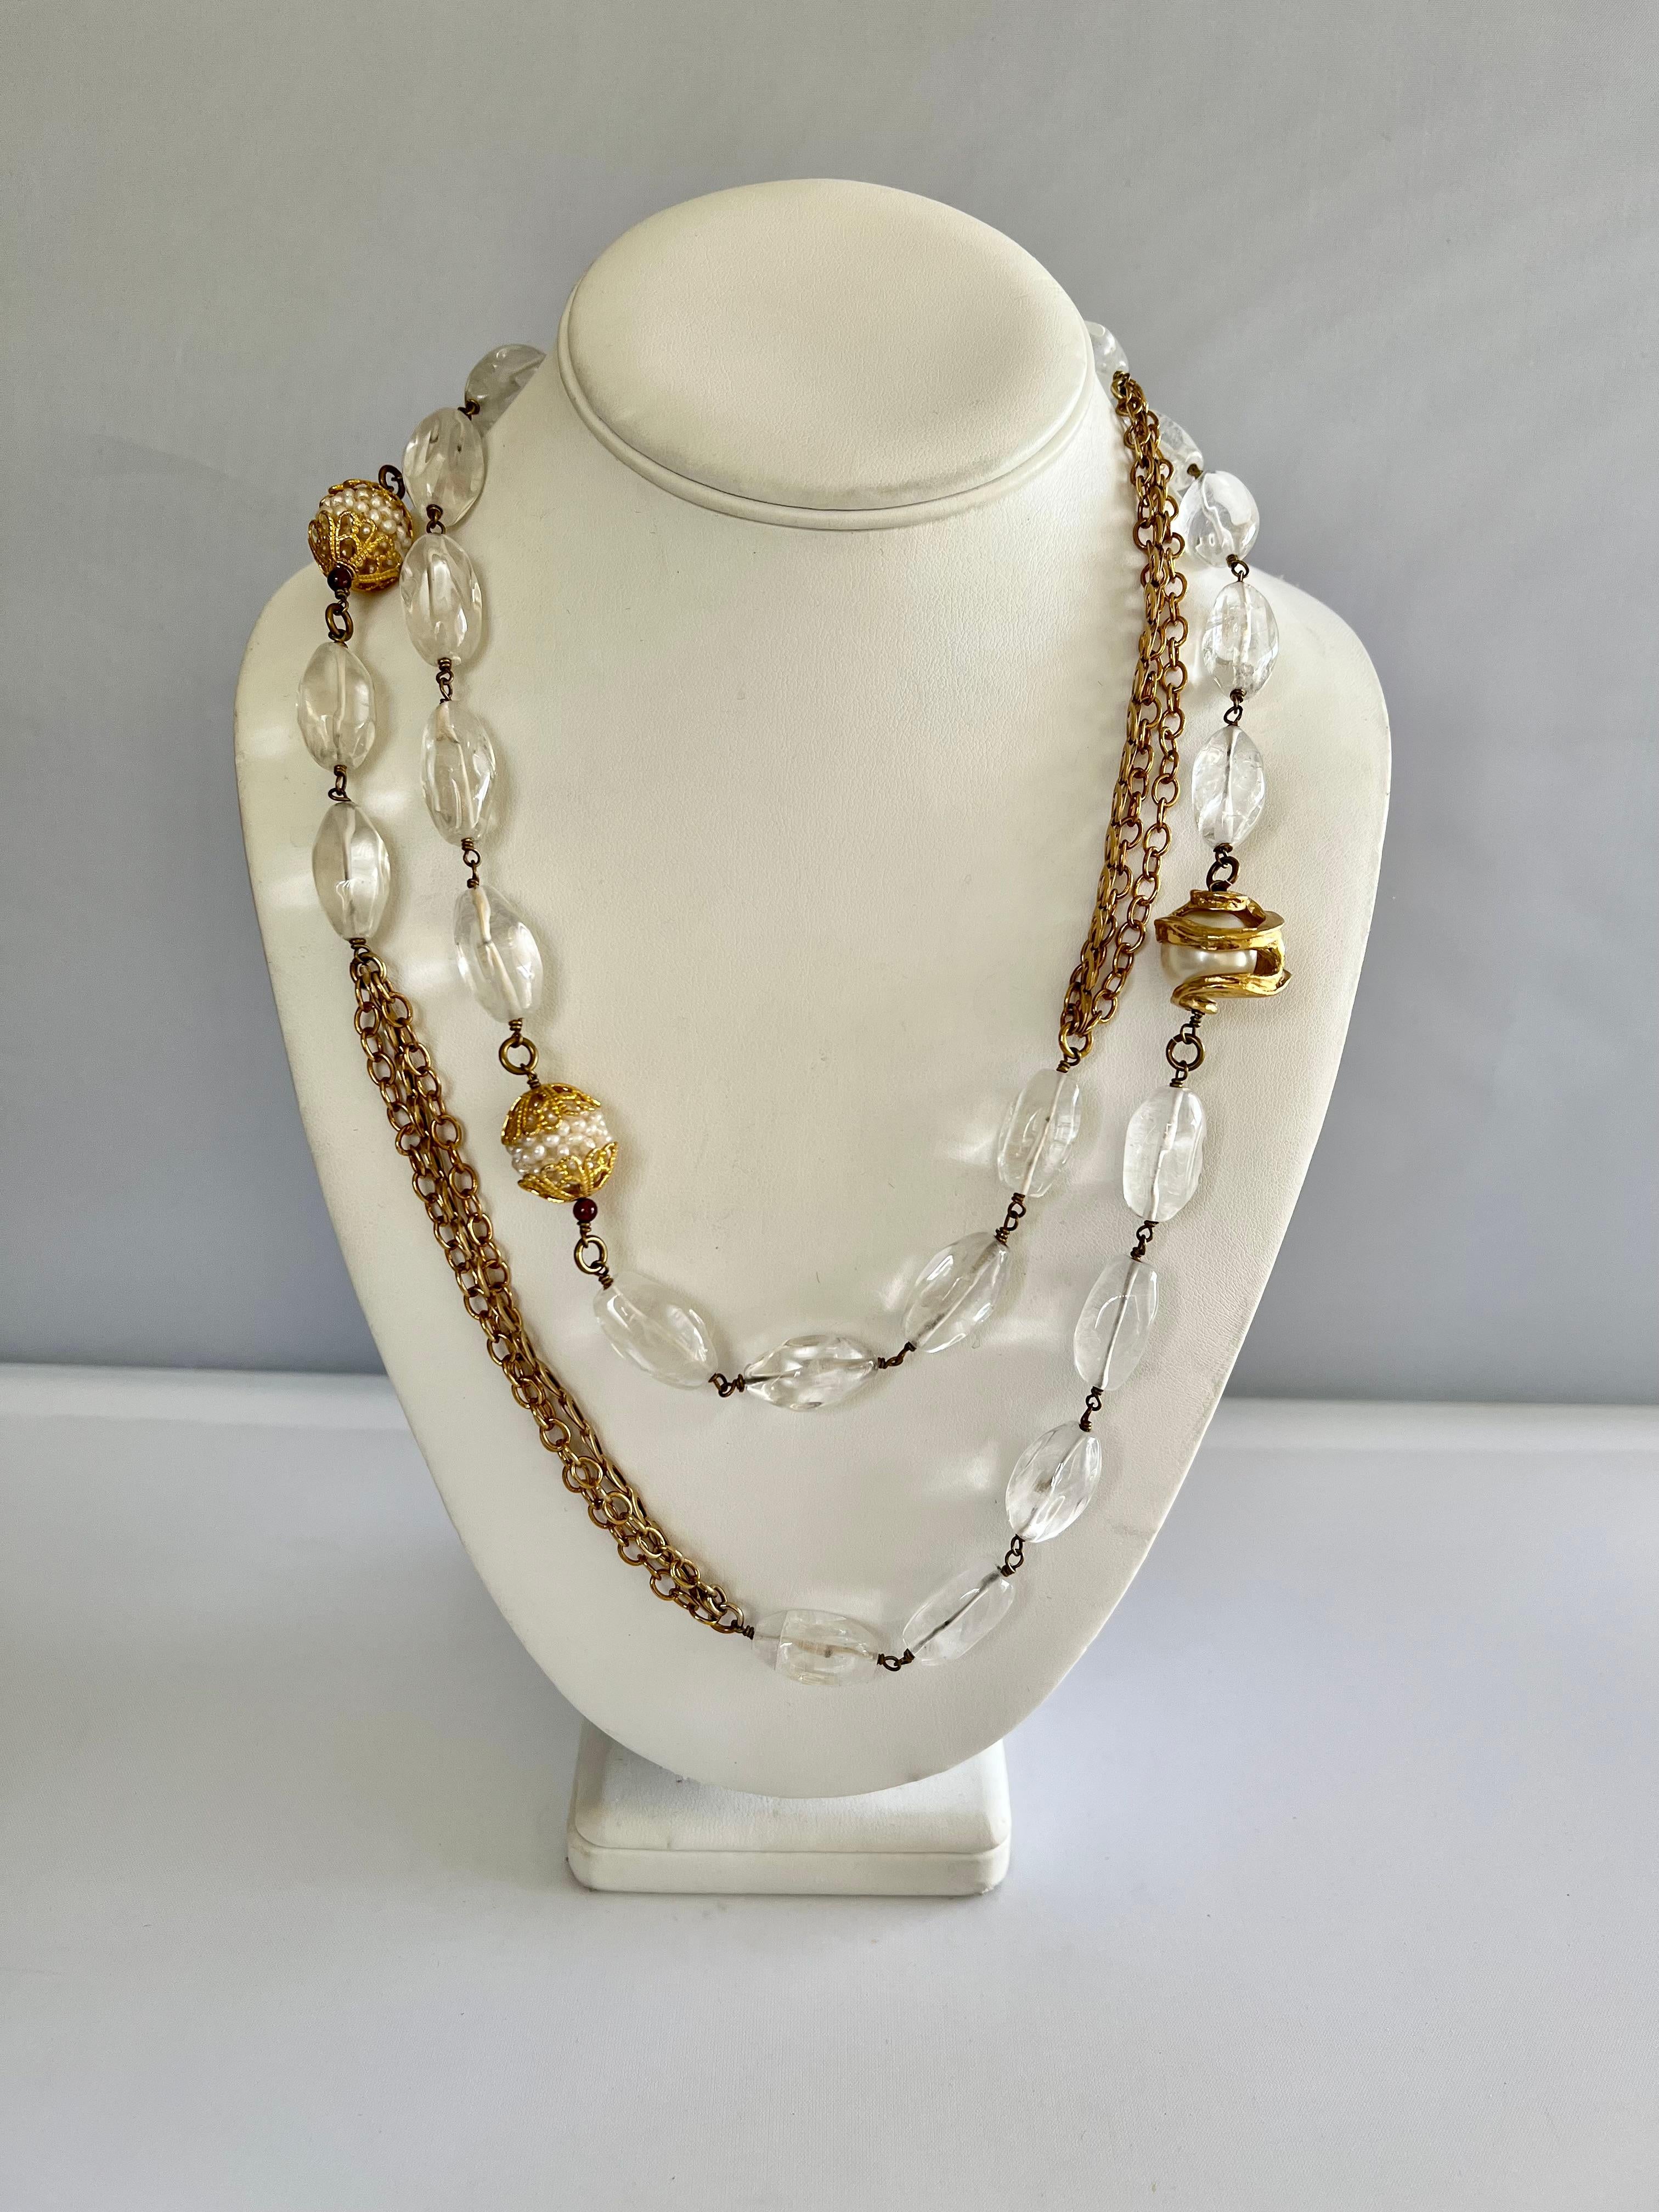 Collier en sautoir doré avec fausses perles, cristal de roche et ornements en bronze - fabriqué à Paris, France. 